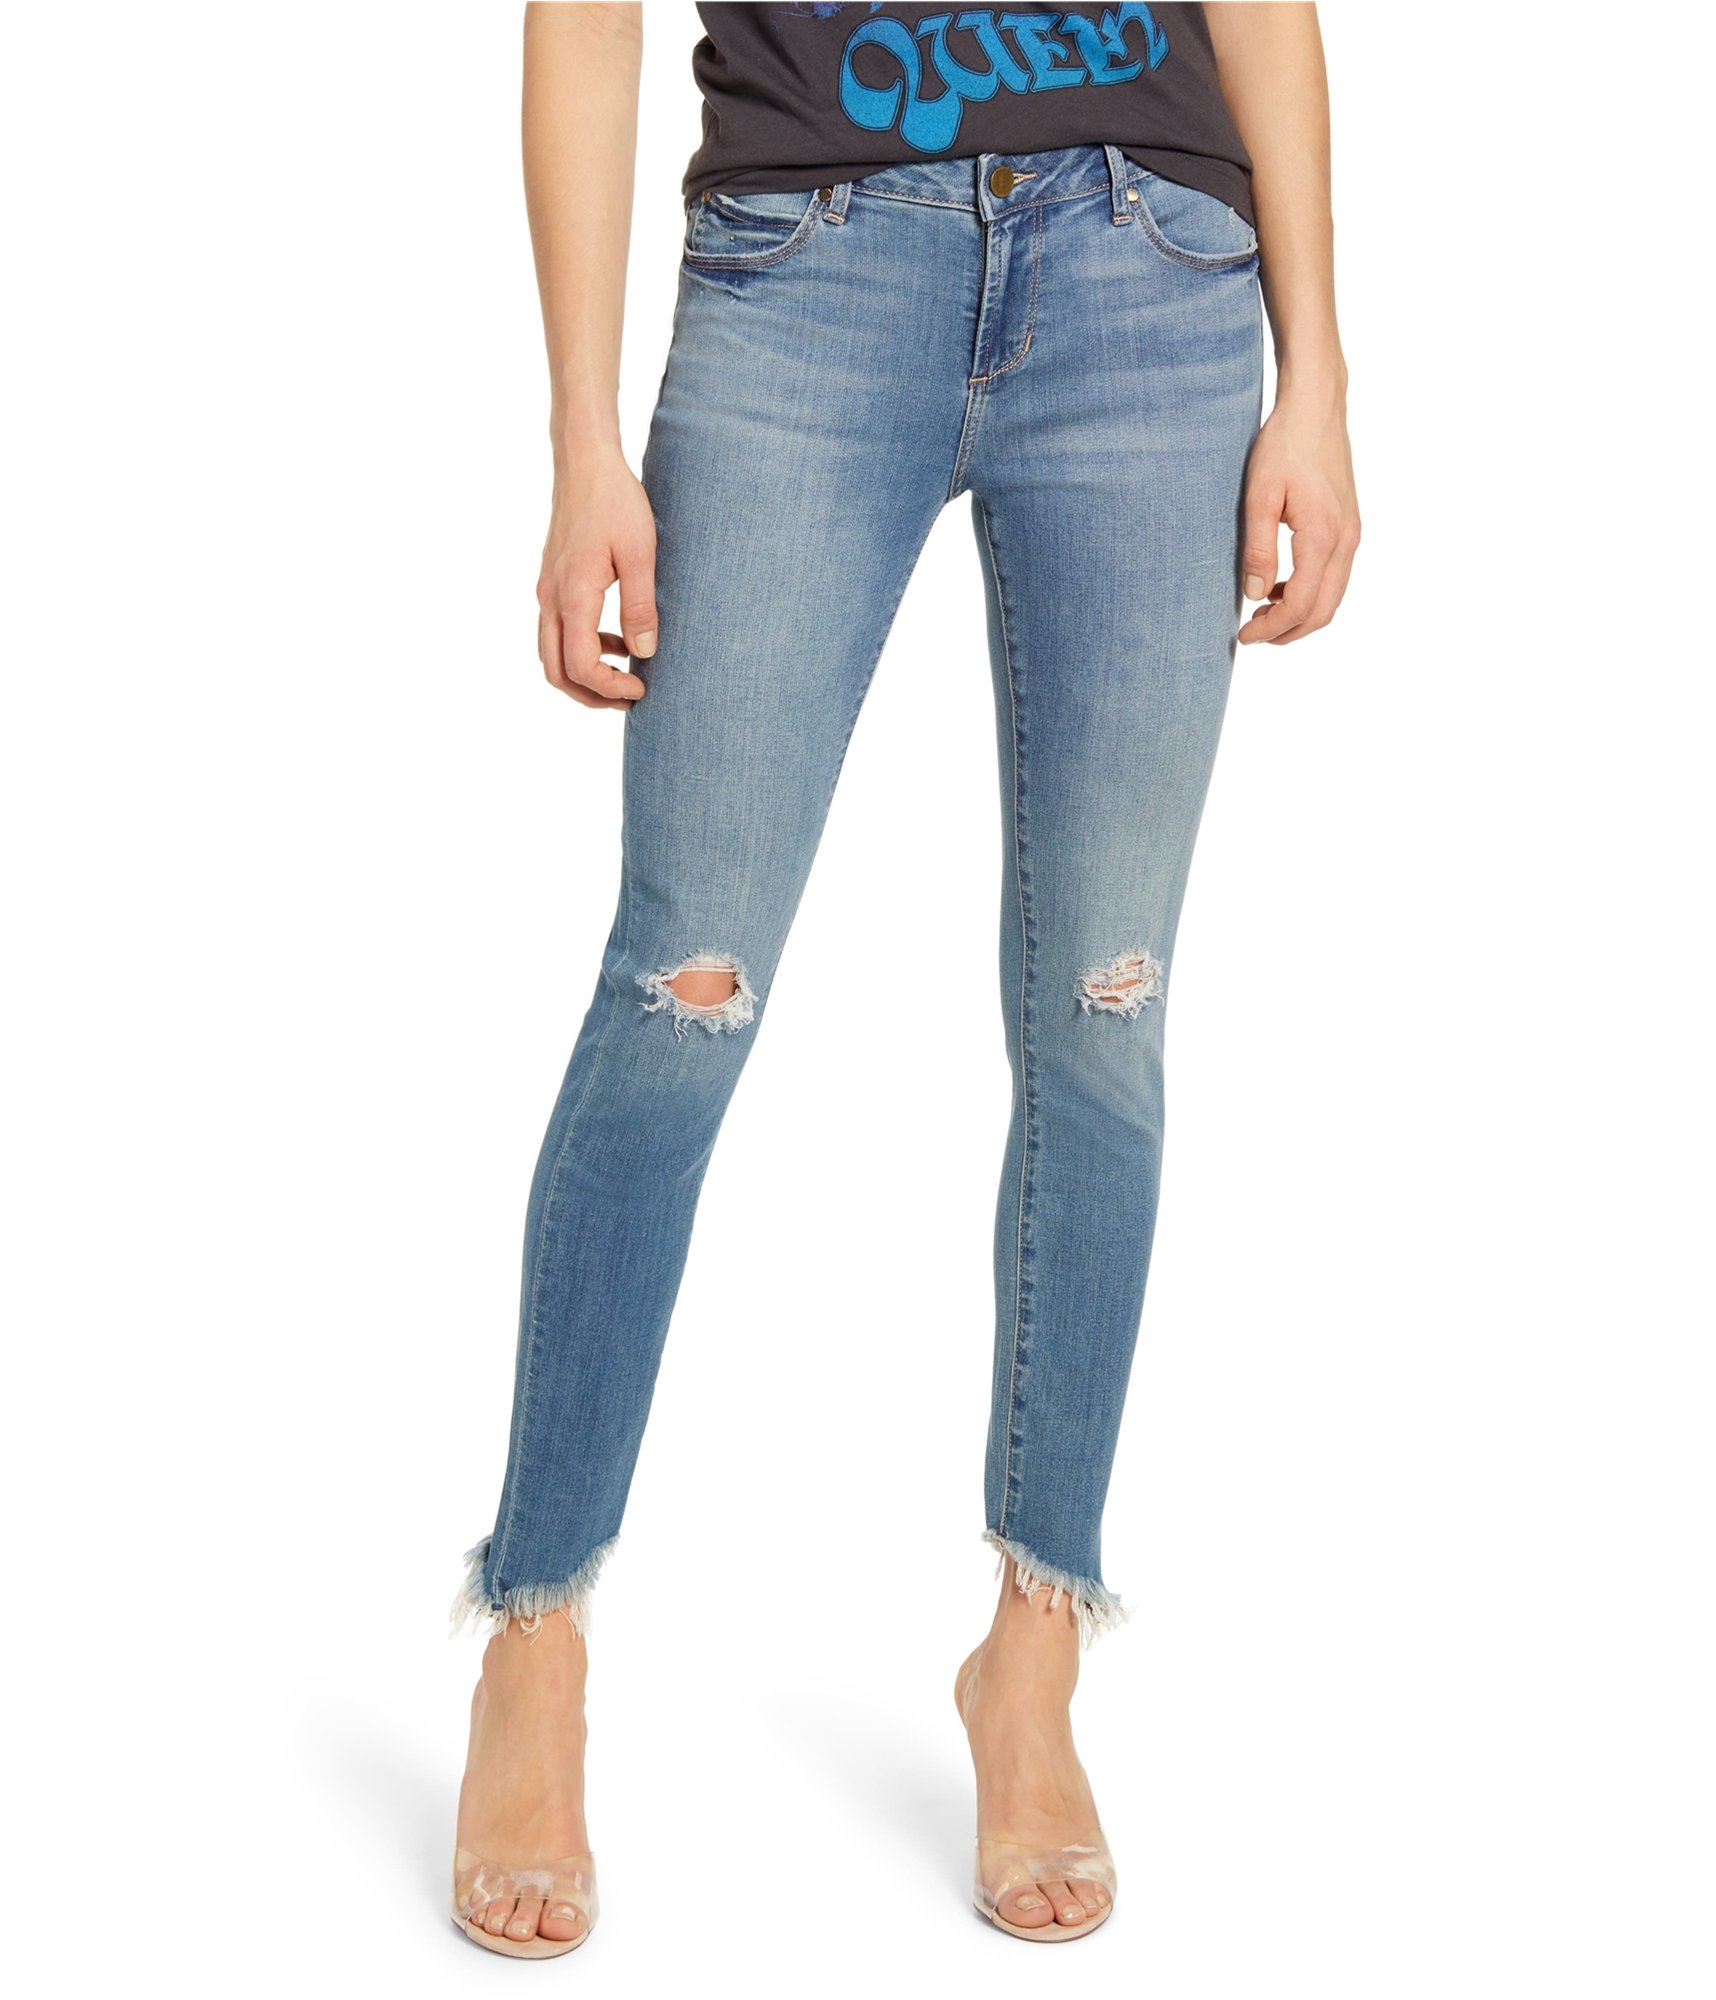 woman-wearing-skinny-jeans